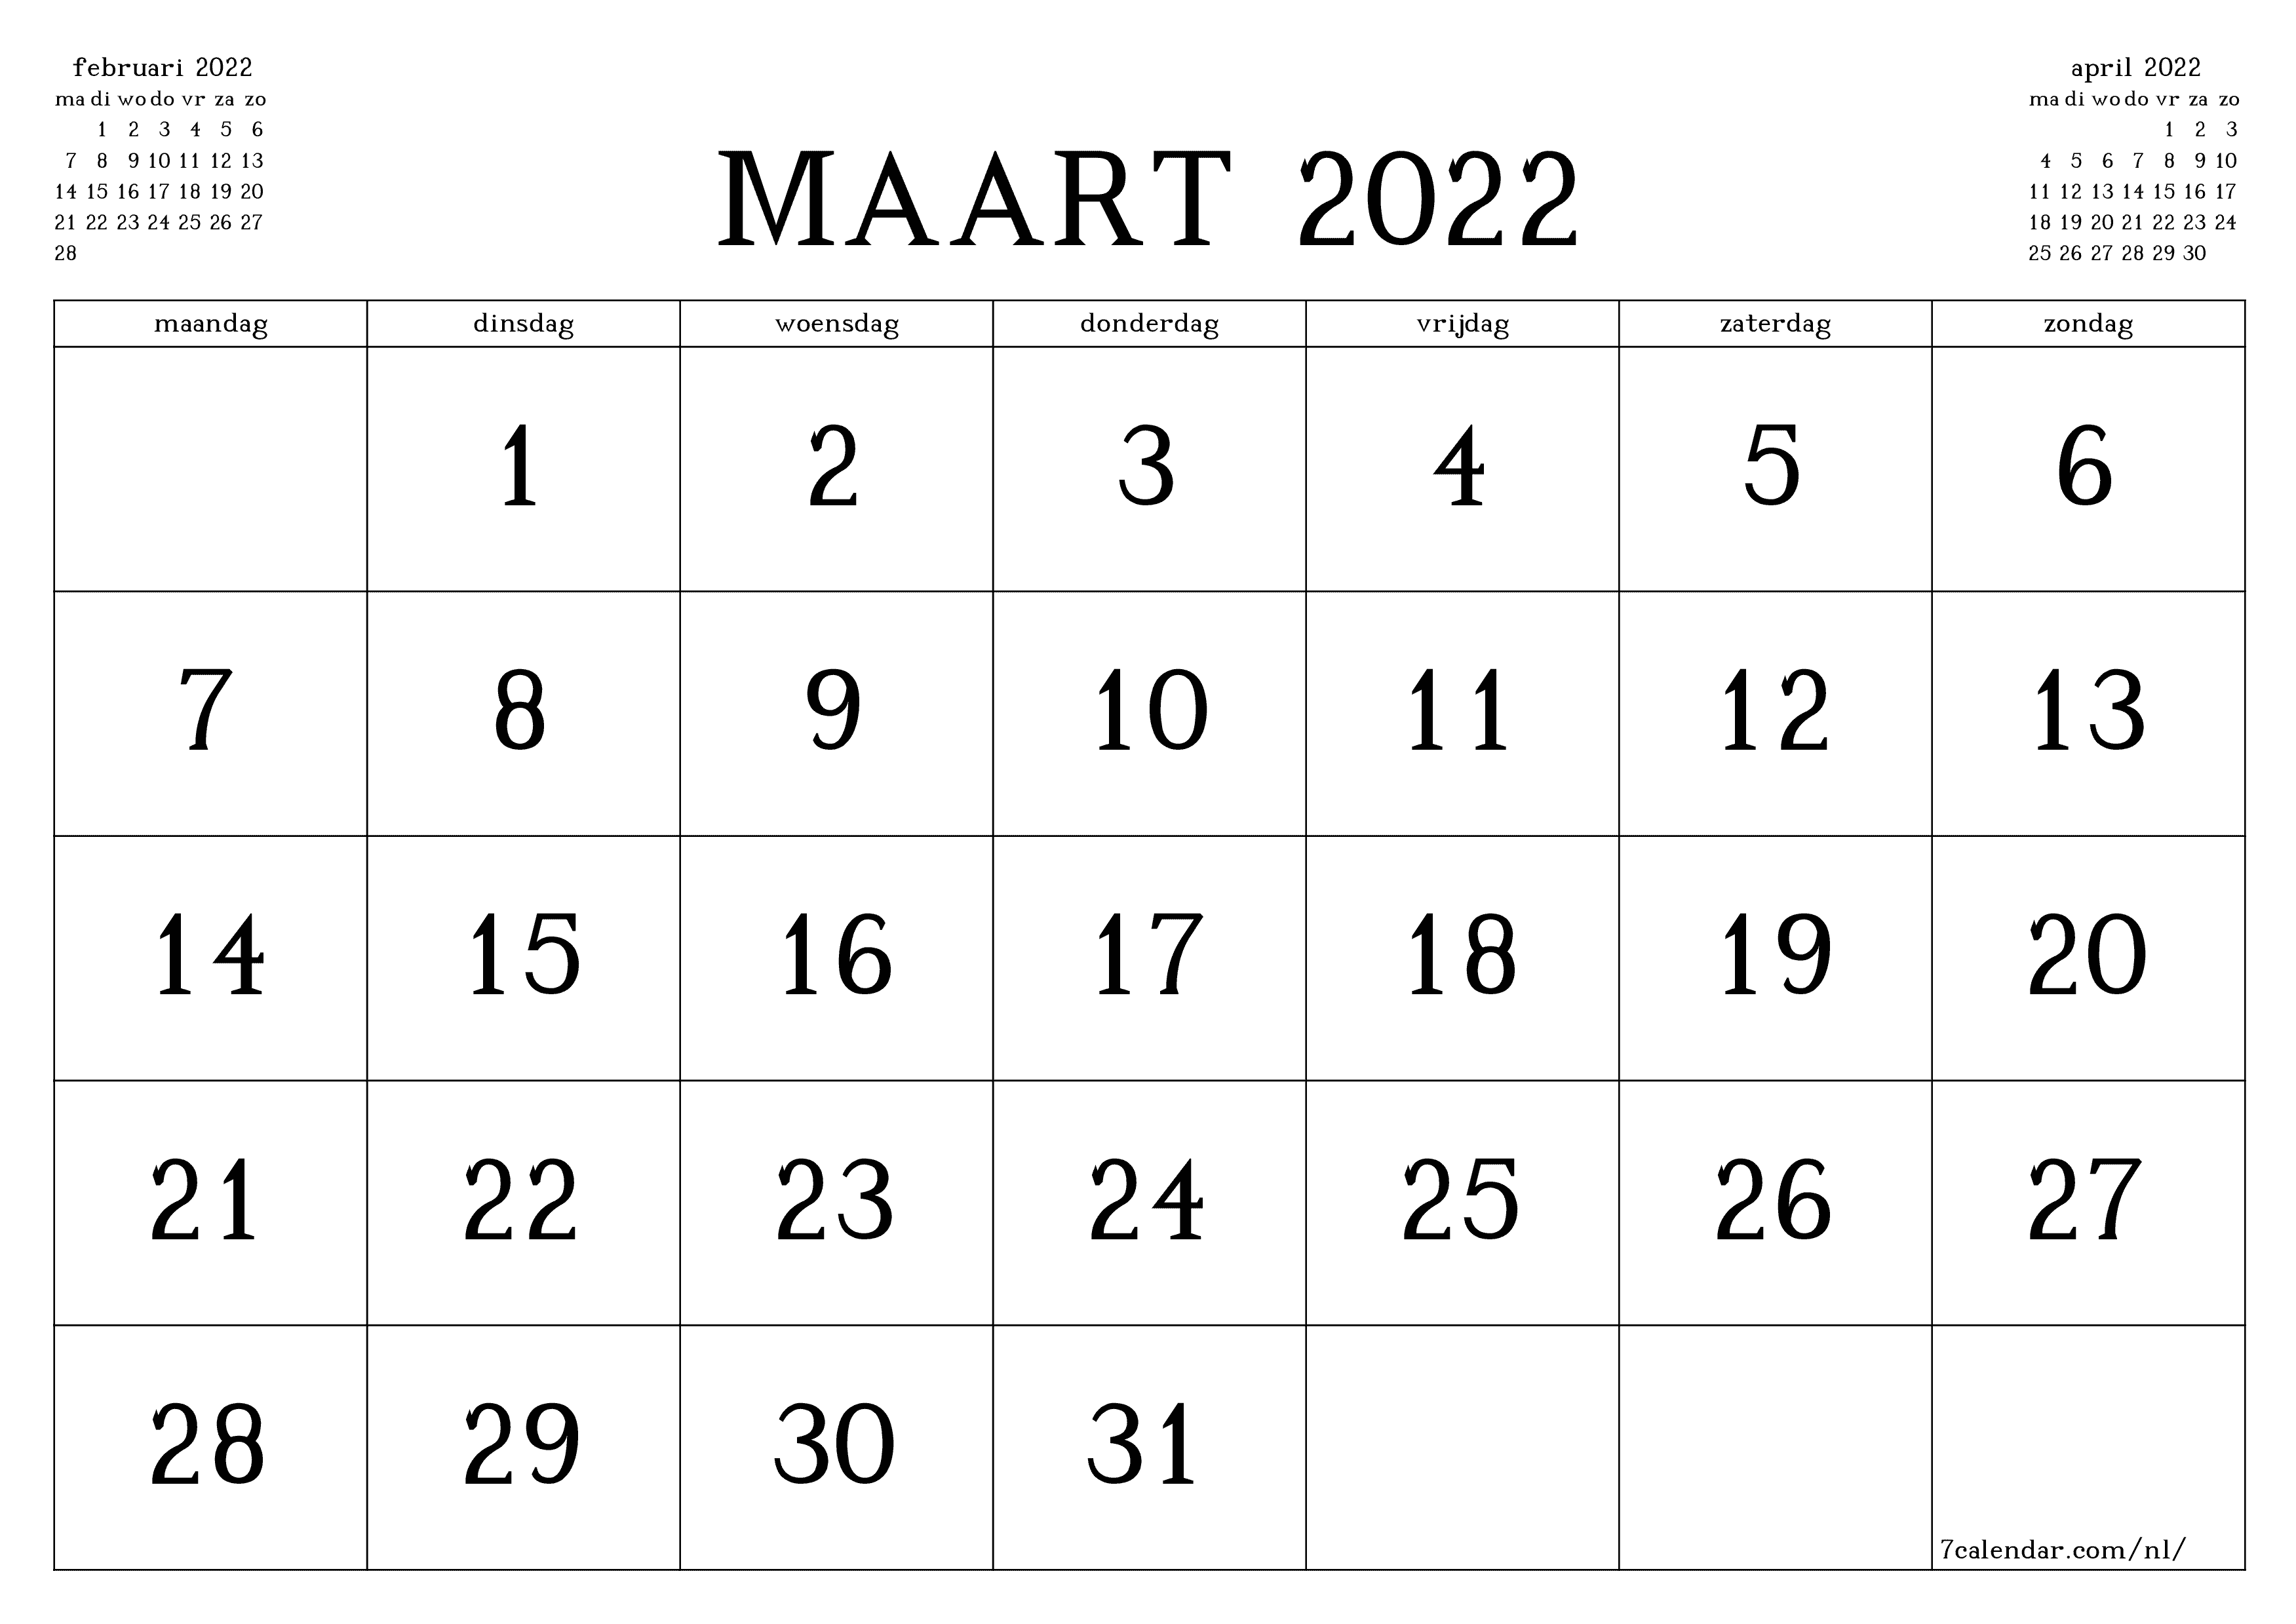 Lege maandplanner voor maand maart 2022 met notities, opslaan en afdrukken naar pdf PNG Dutch - 7calendar.com